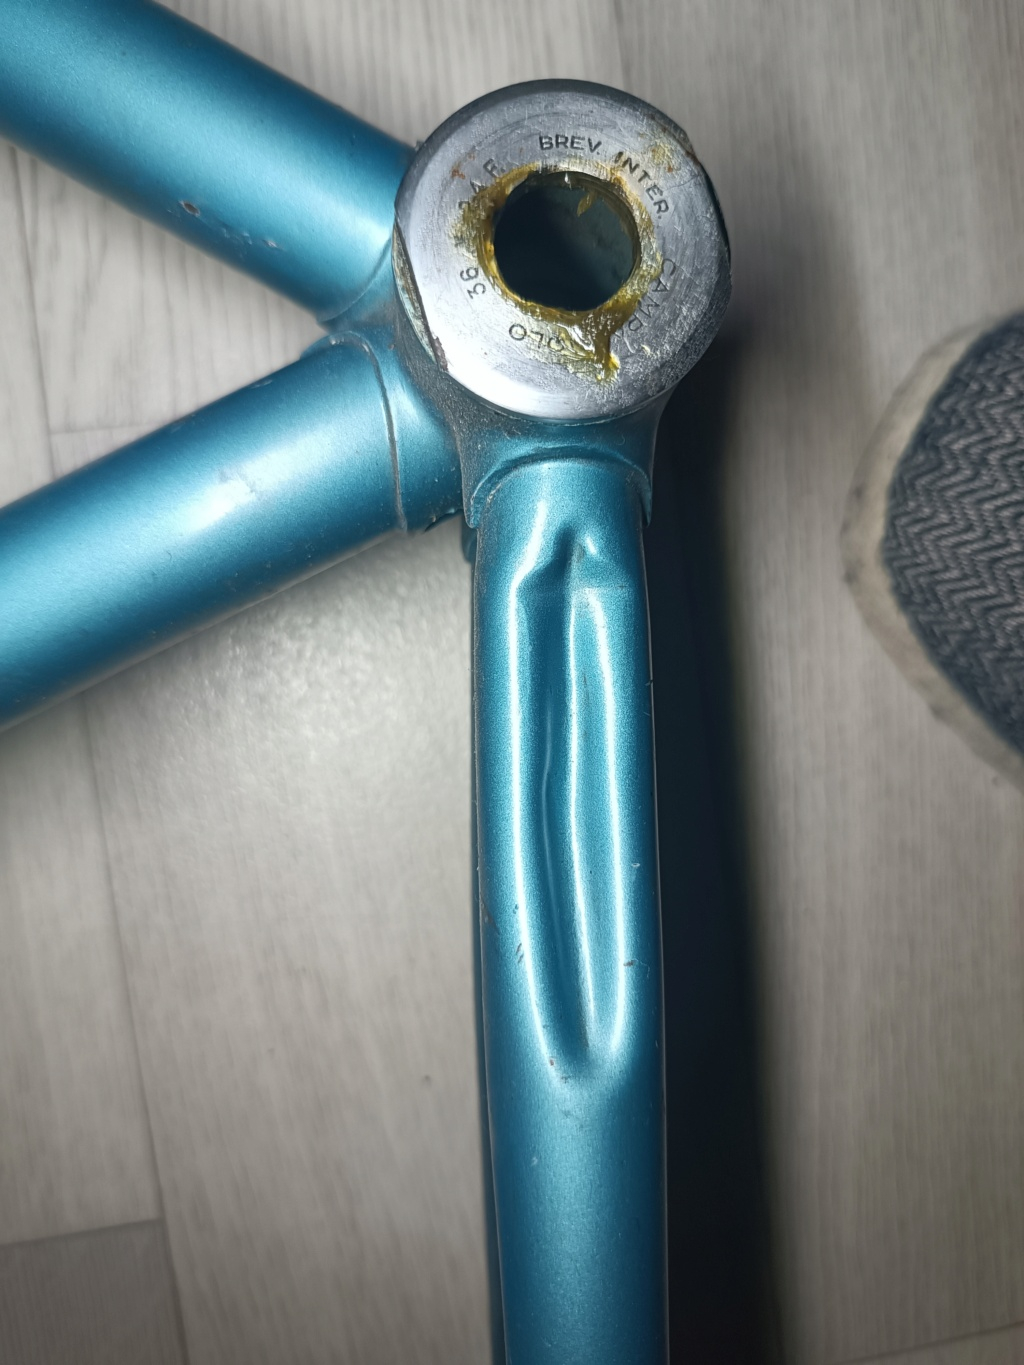 Vélo artisanal bleu en Columbus monté en campa nuovo / super record (restauration terminée) Img_2558